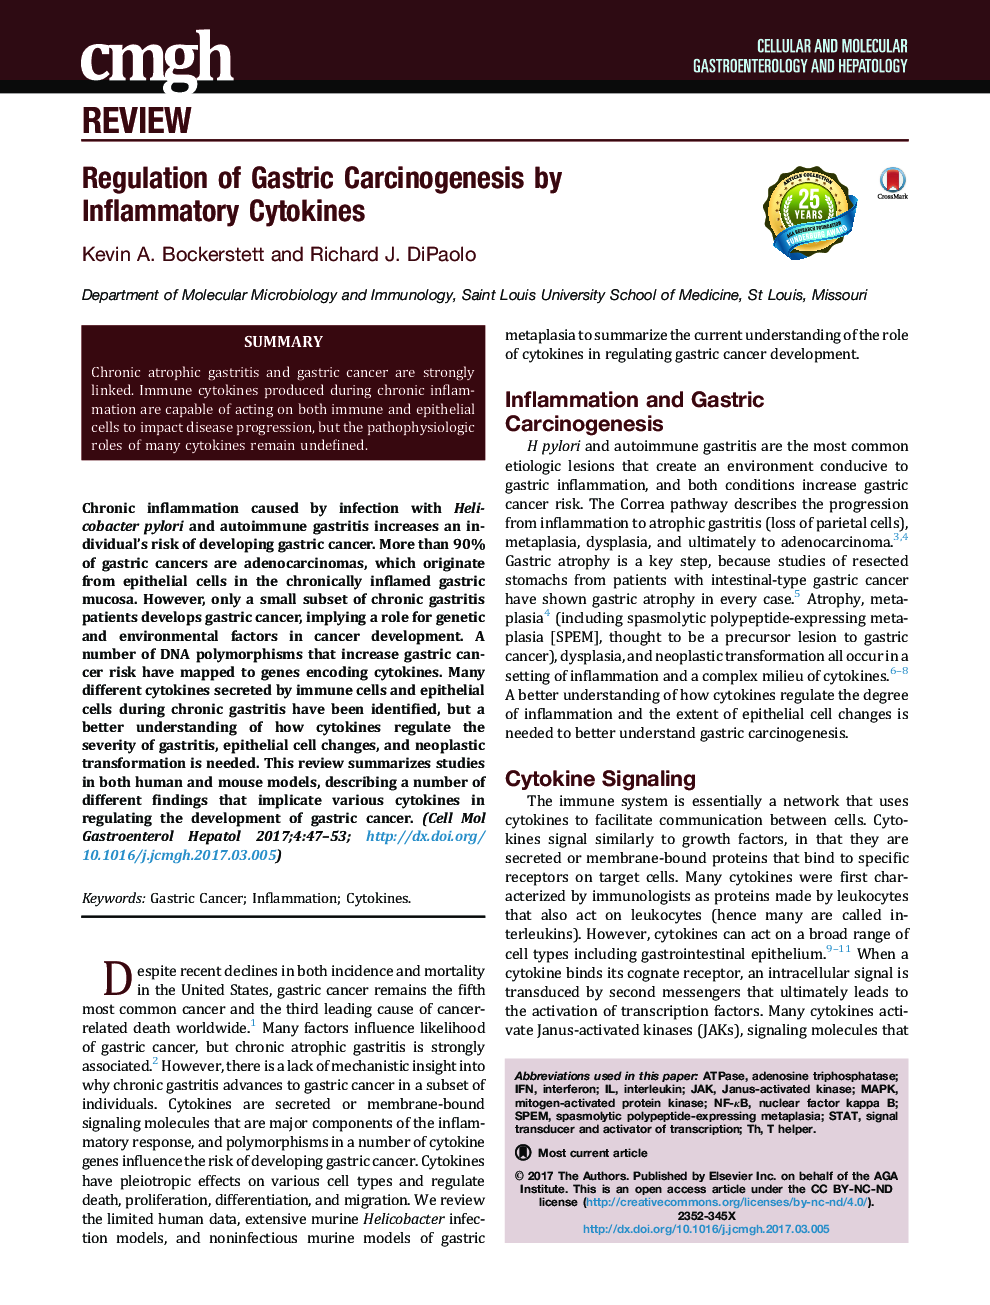 Regulation of Gastric Carcinogenesis by InflammatoryÂ Cytokines